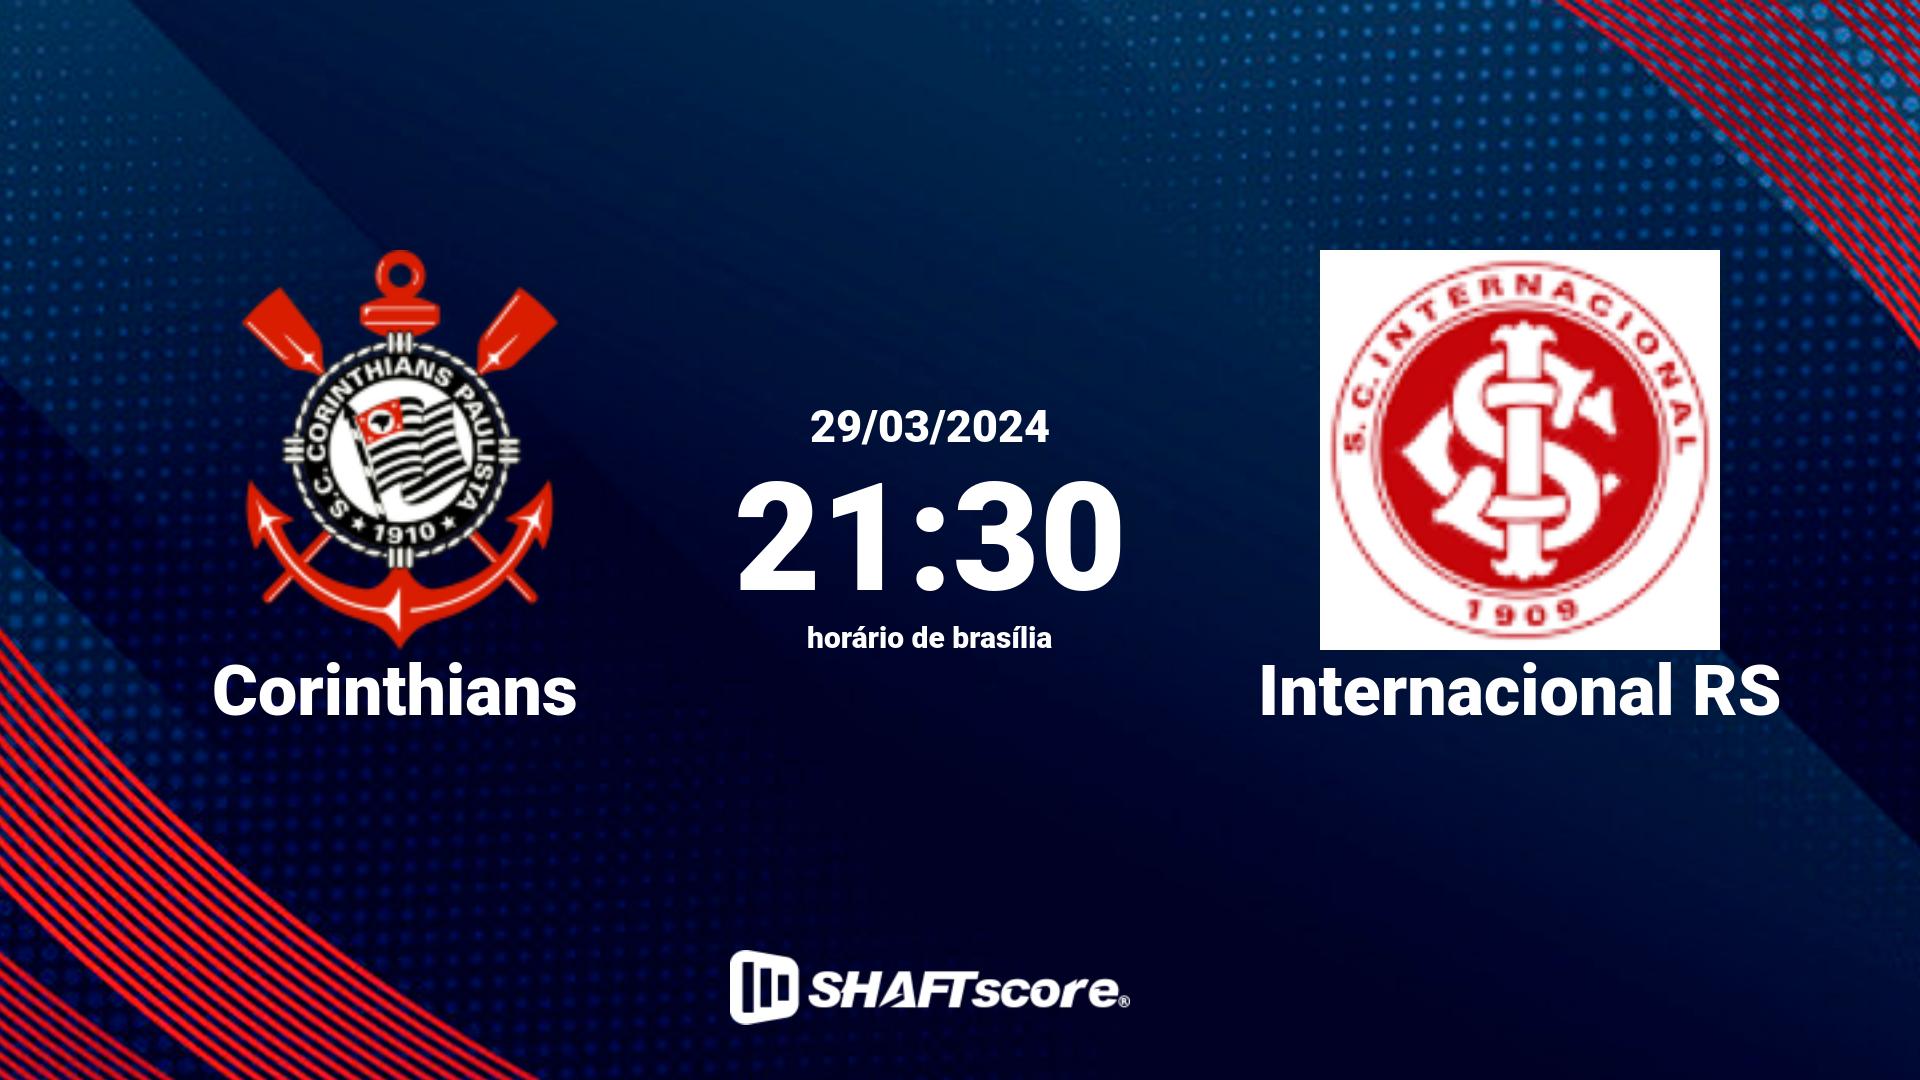 Estatísticas do jogo Corinthians vs Internacional RS 29.03 21:30